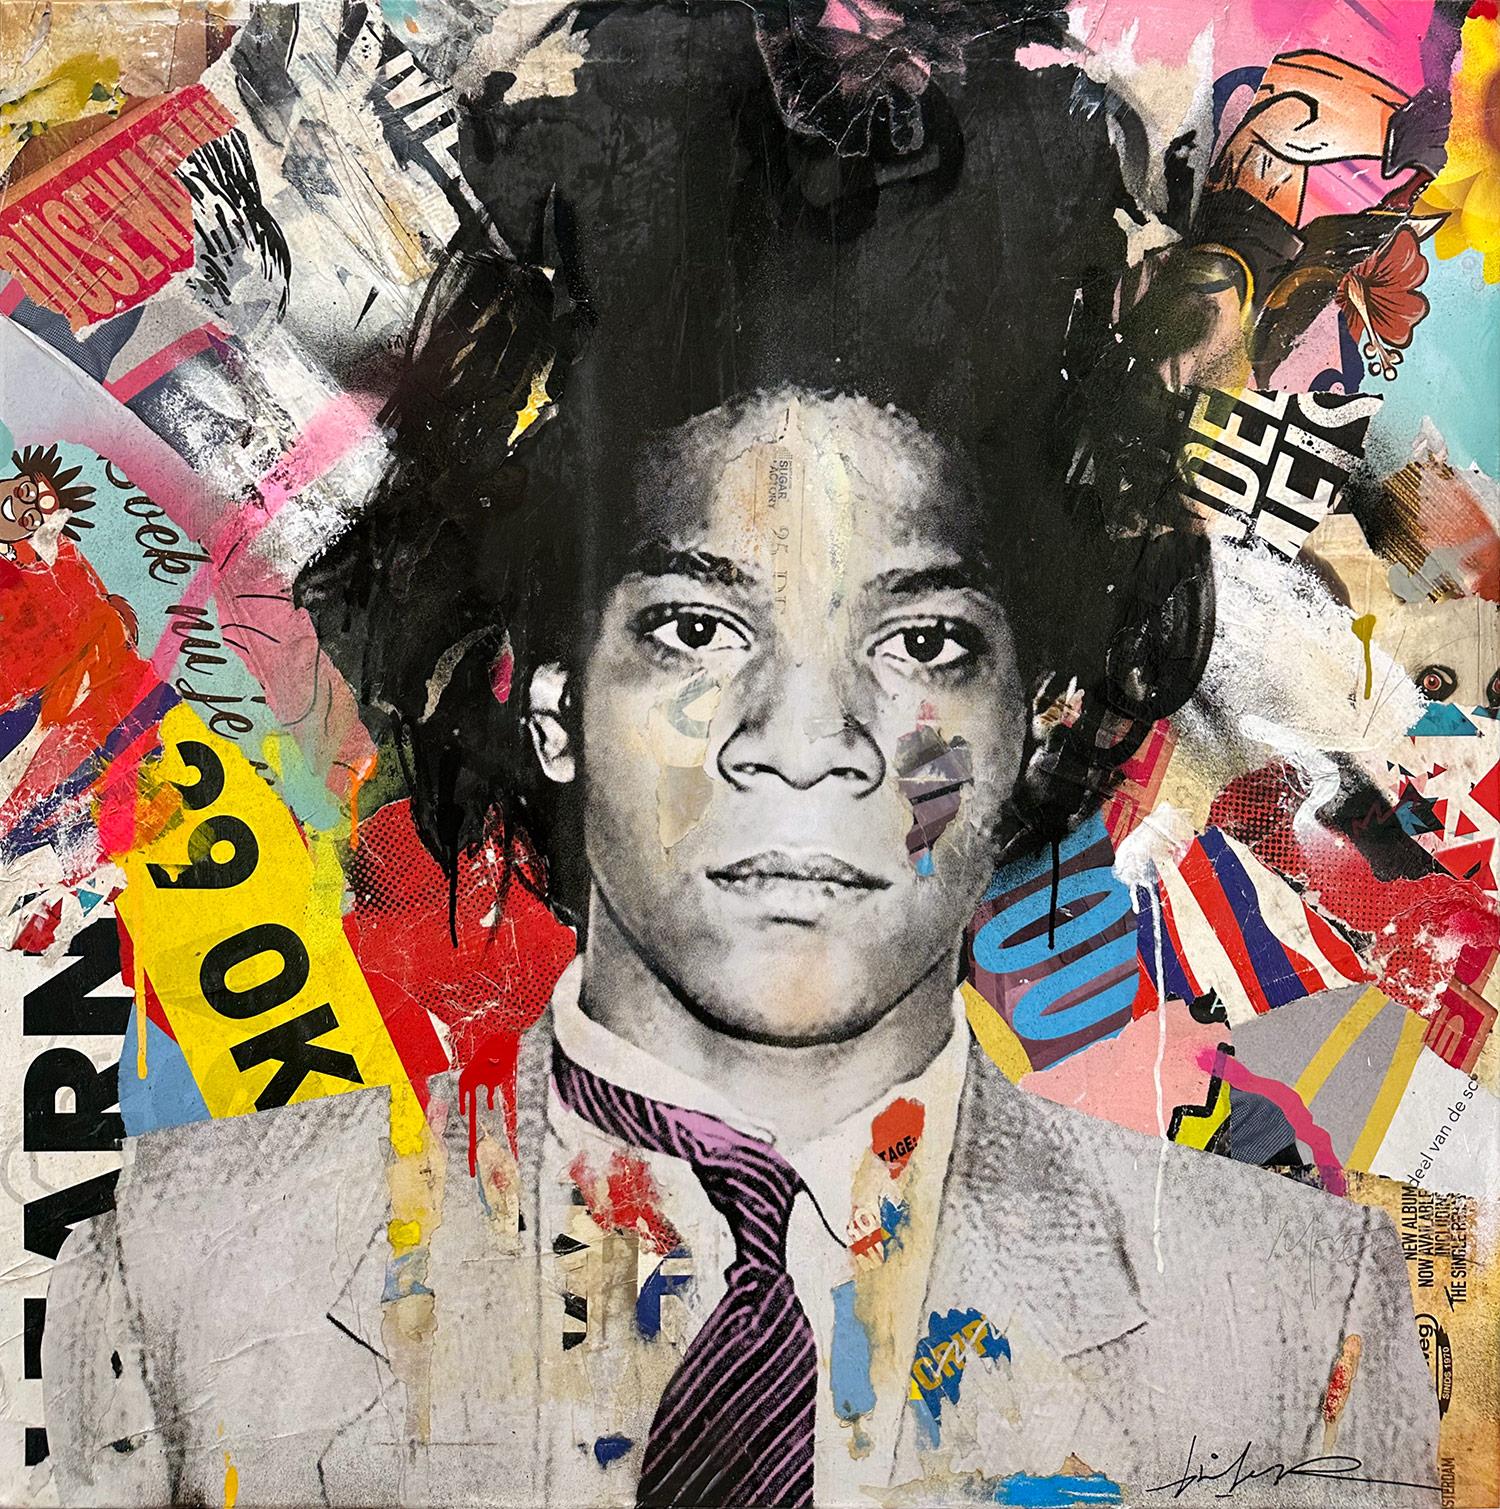 Gieler Portrait Painting - "Jean Michel" Basquiat Colorful Pop Art Portrait Mixed Media Painting on Canvas